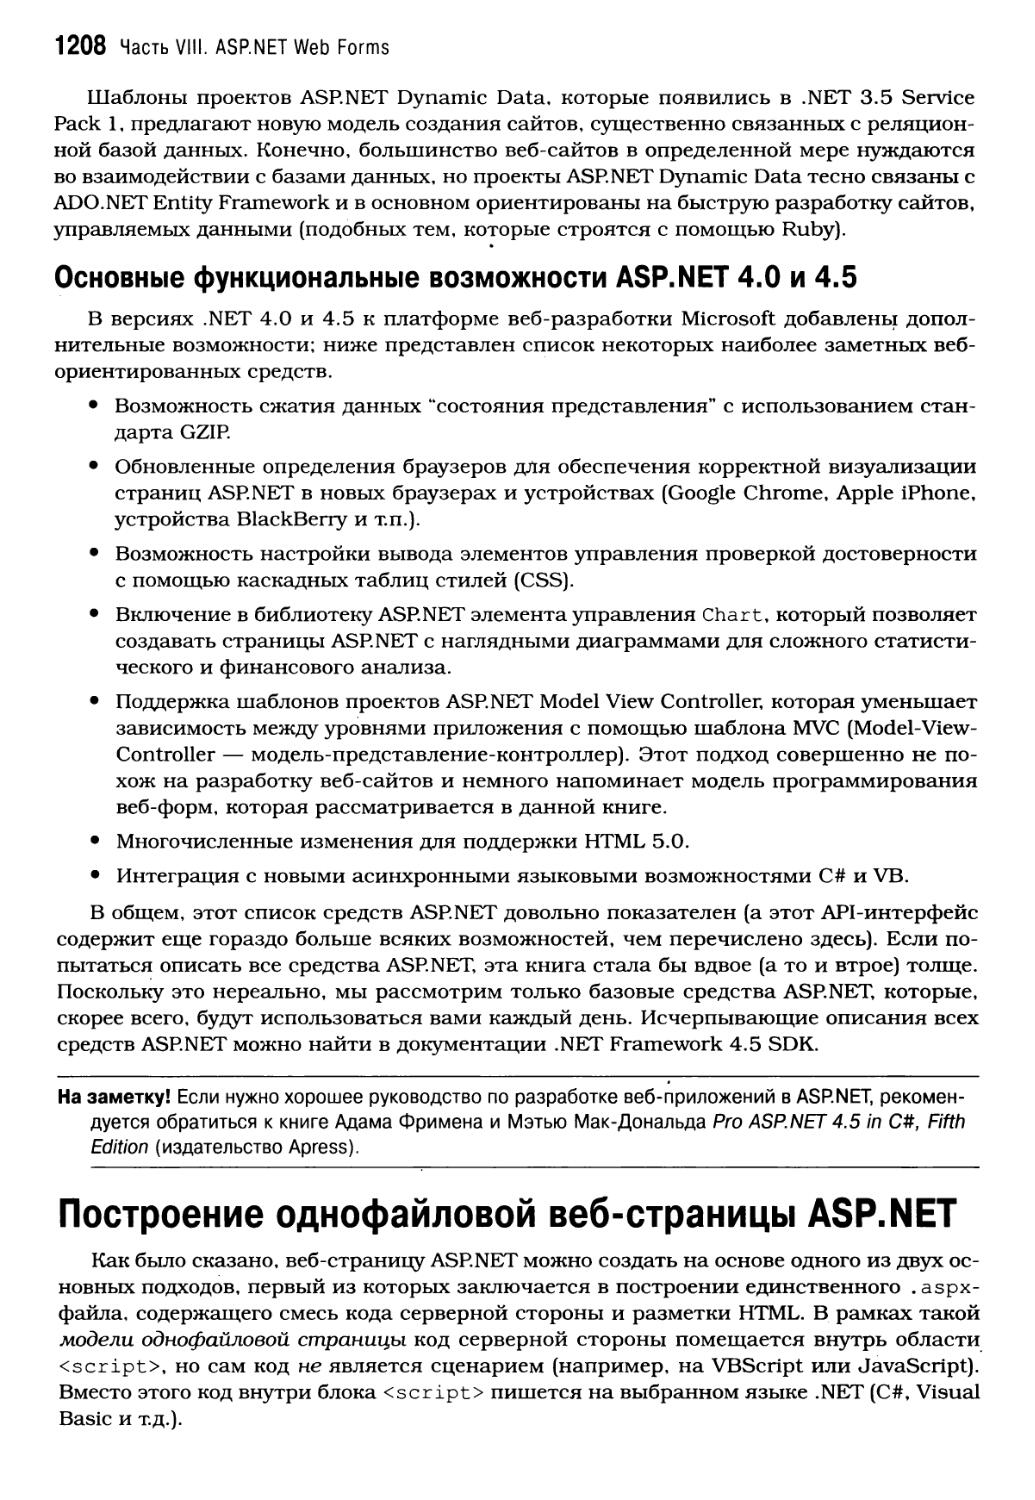 Основные функциональные возможности ASP.NET 4.0 и 4.5
Построение однофайловой веб-страницы ASP. NET